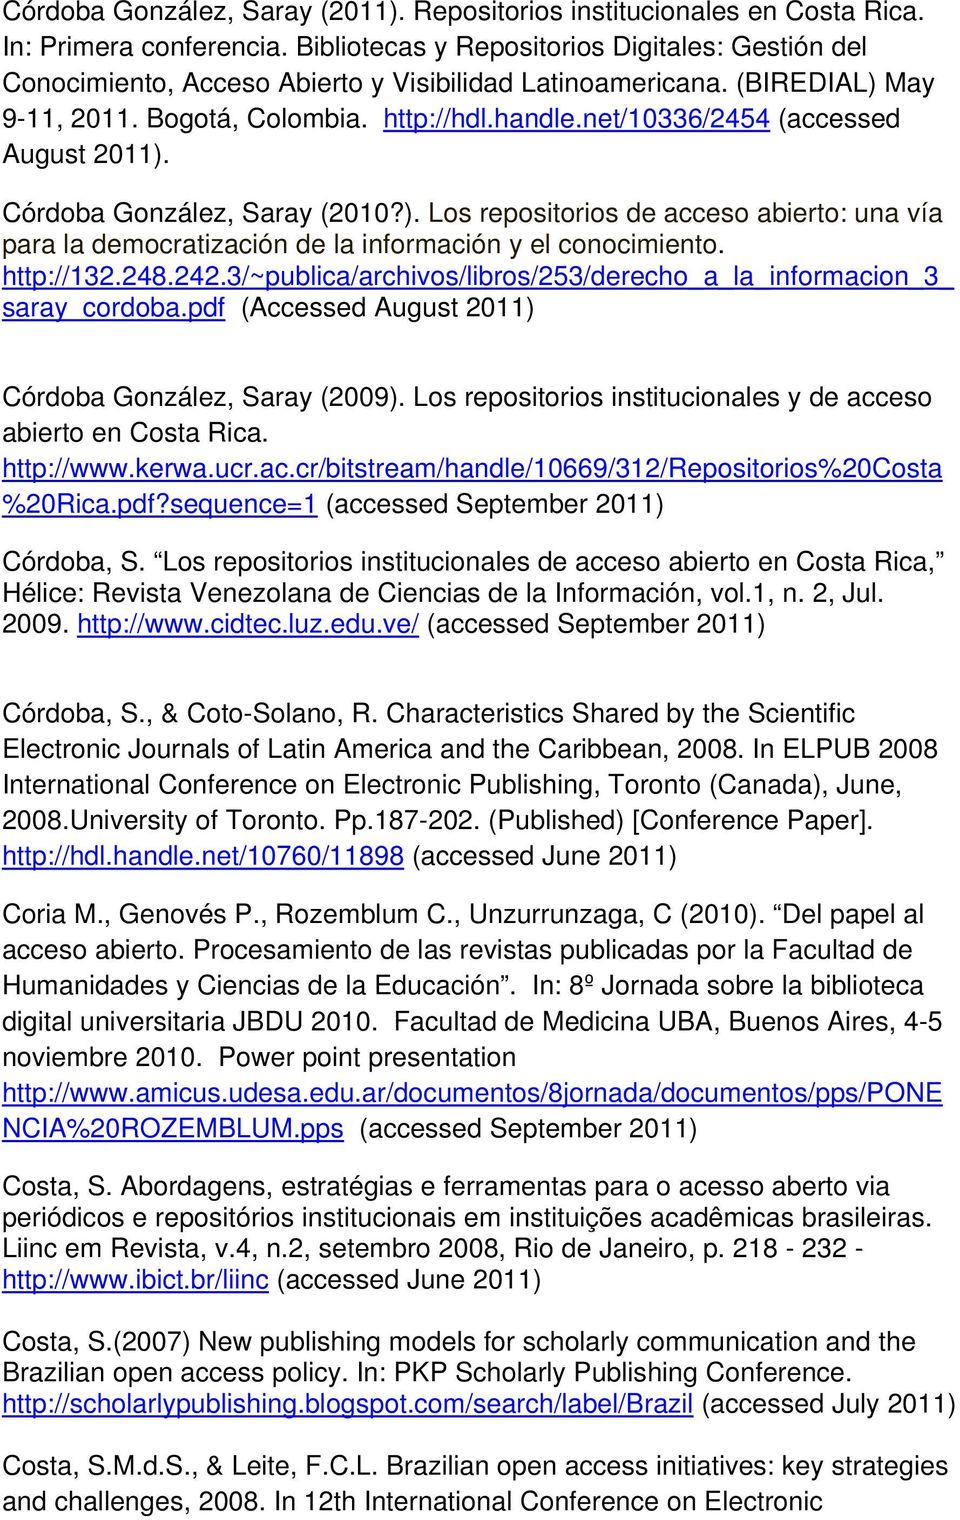 net/10336/2454 (accessed August. Córdoba González, Saray (2010?). Los repositorios de acceso abierto: una vía para la democratización de la información y el conocimiento. http://132.248.242.